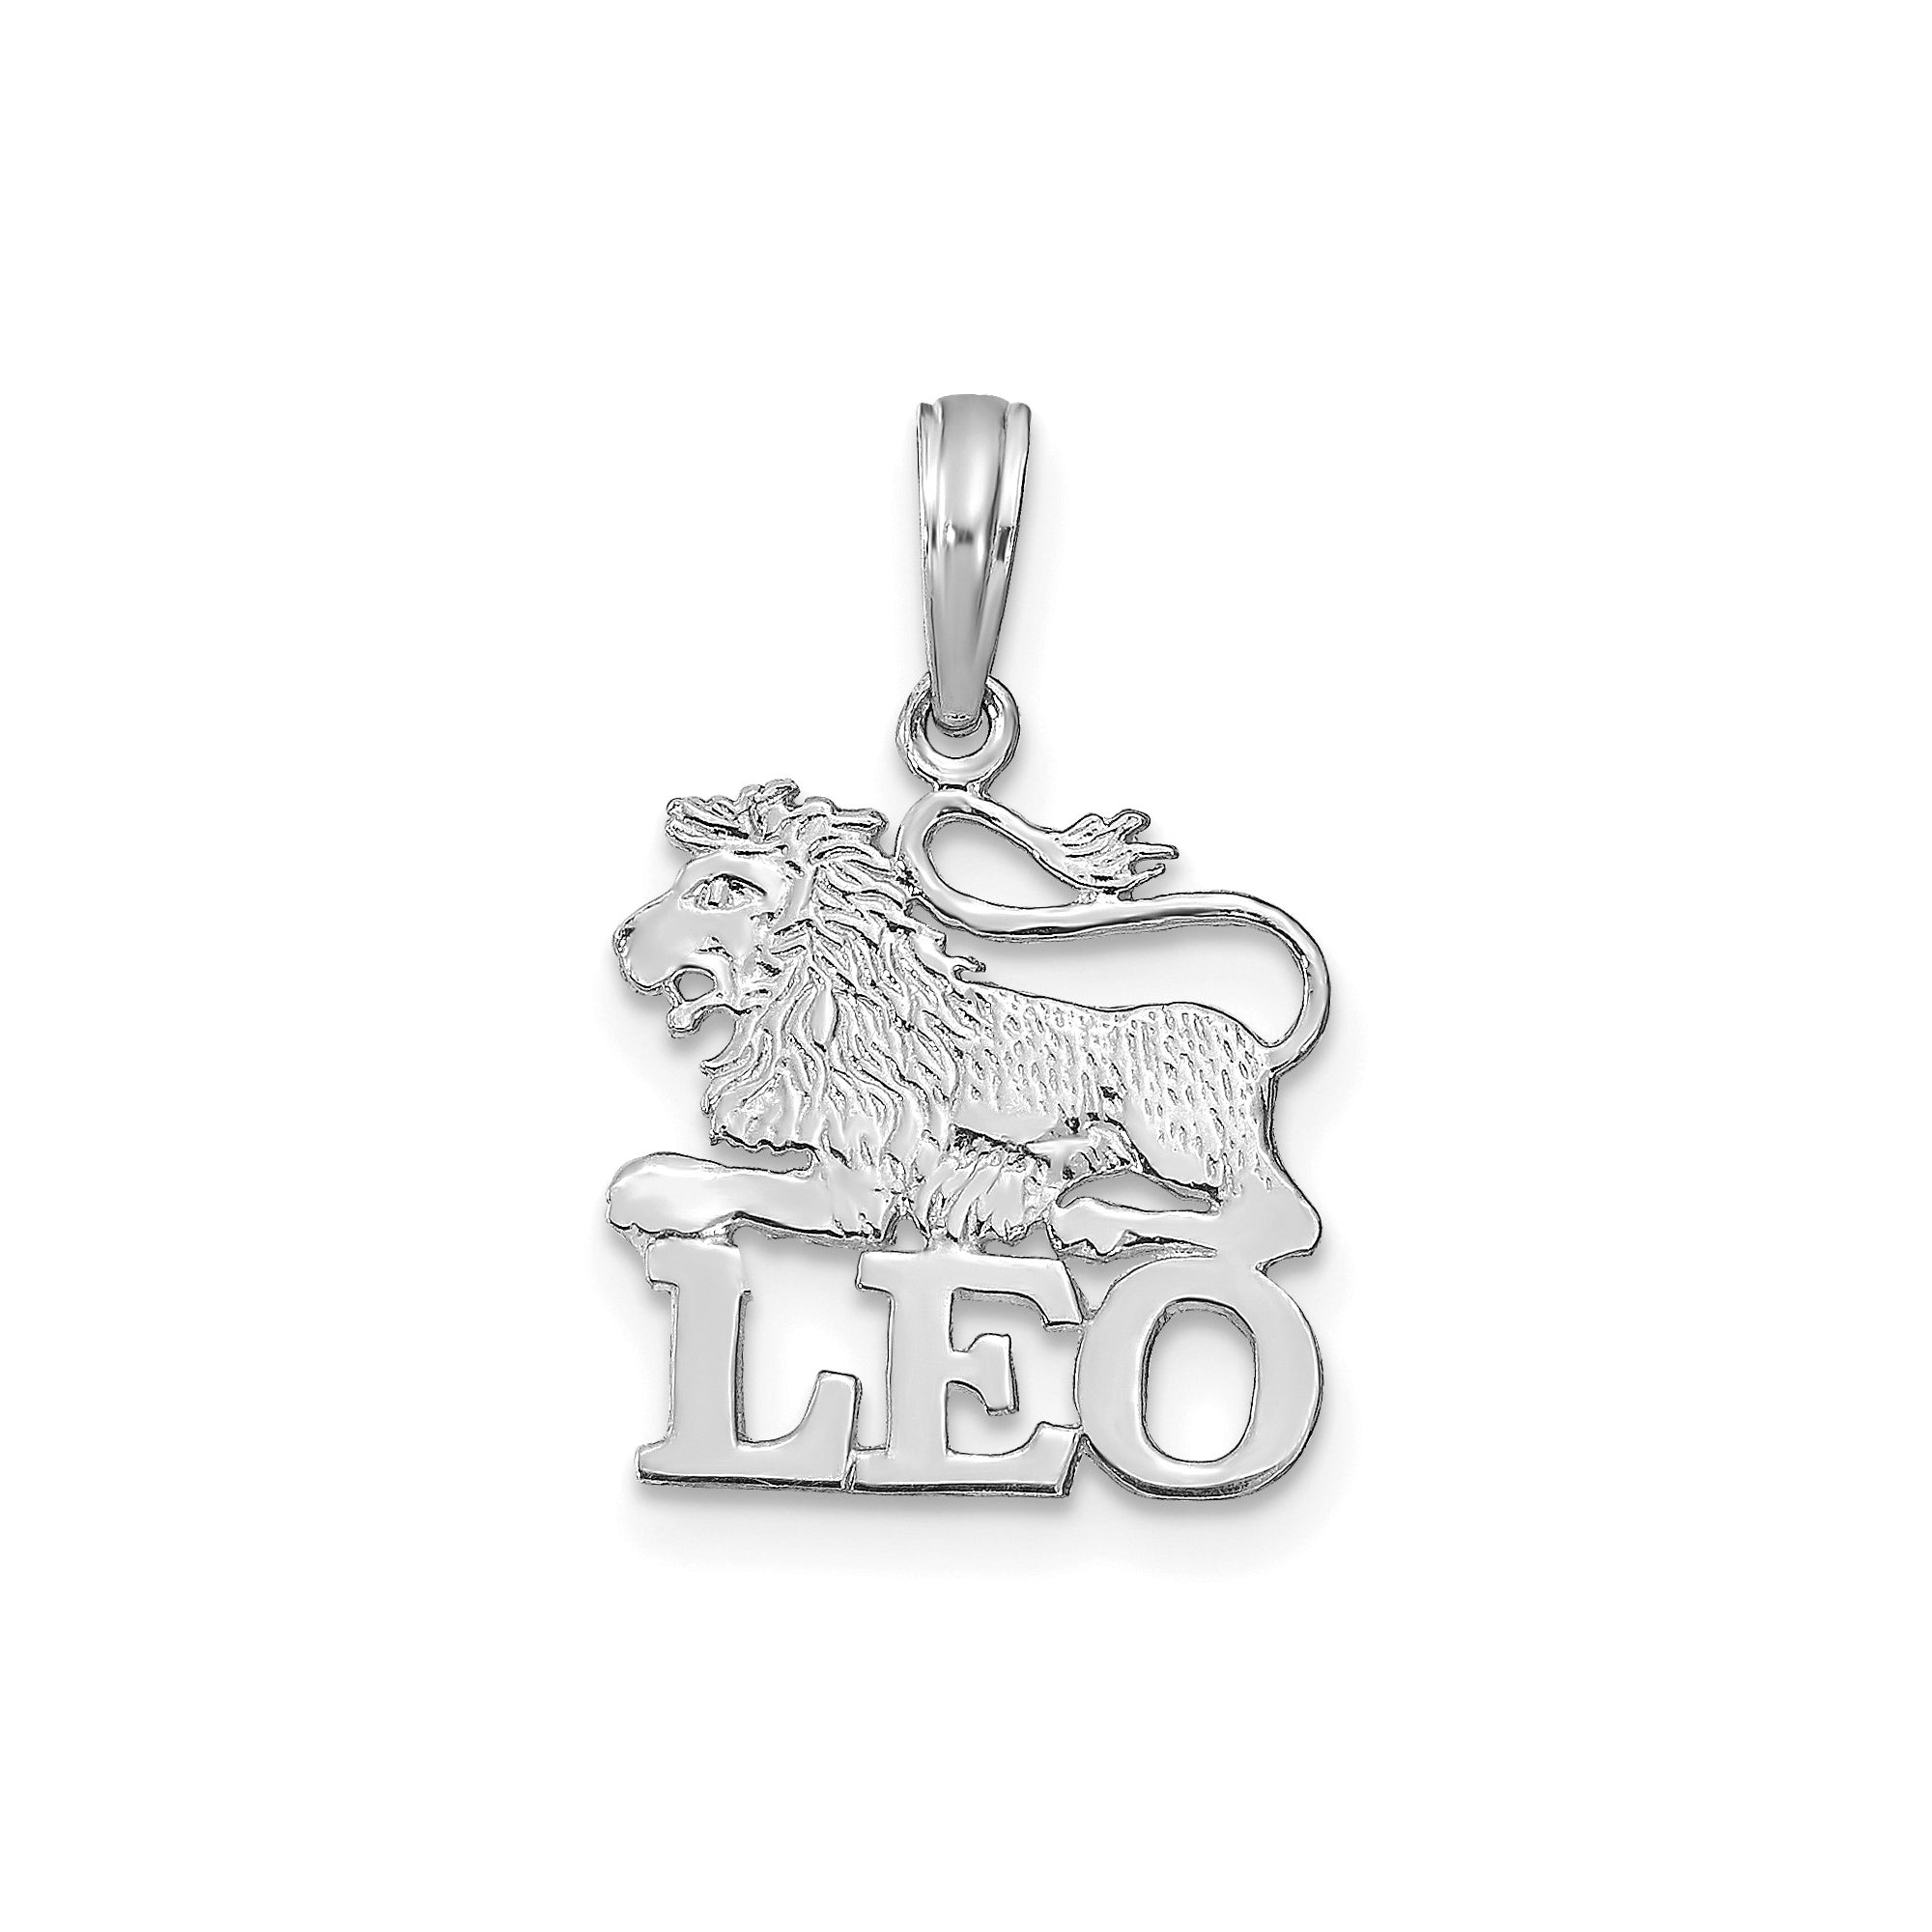 14k ekte solid gull Zodiac fødselssymbol anheng sjarm fine designer smykker for menn og kvinner